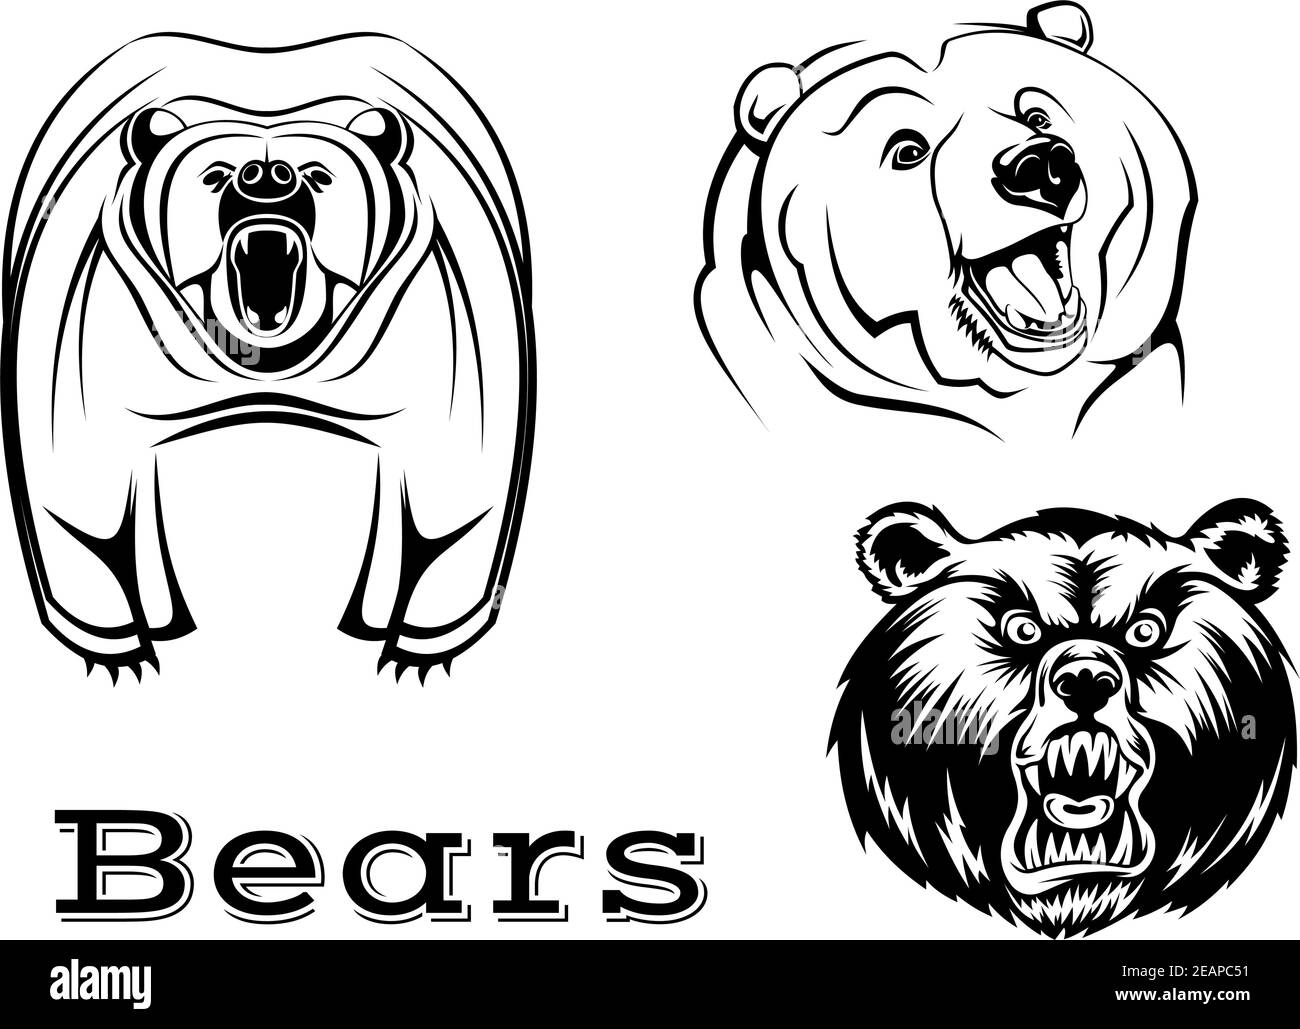 Starke wütend Grizzly trägt Zeichen isoliert auf weiß für Tattoo, Wildlifel und Maskottchen-Design Stock Vektor